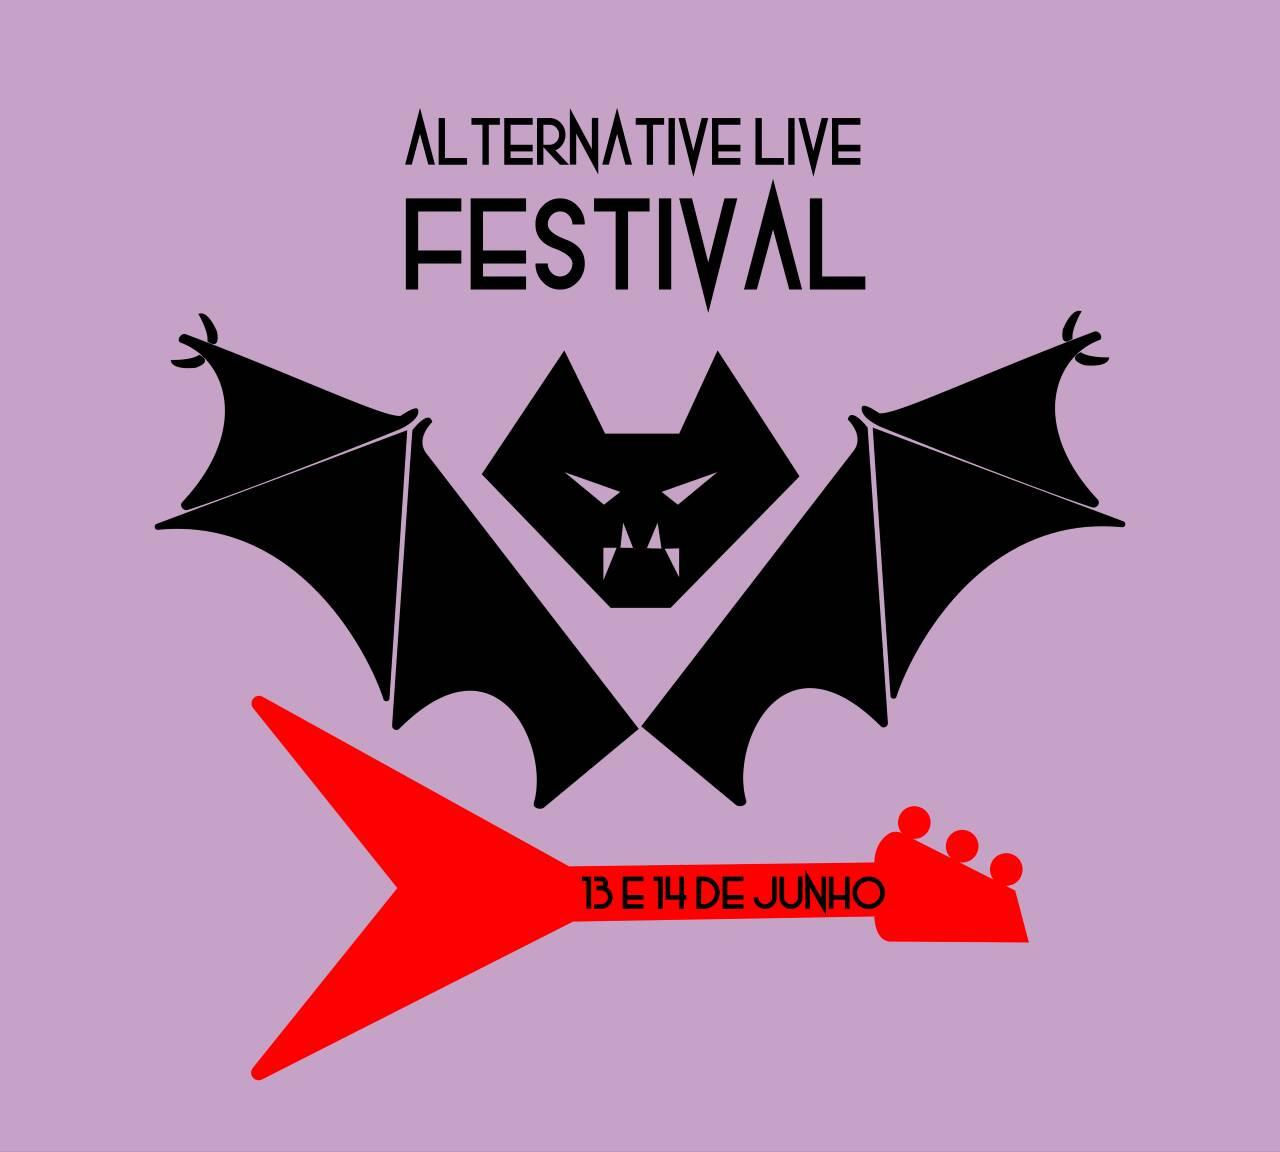 Alternative Live Festival acontece nos dias 13 e 14 de junho Cwb Live